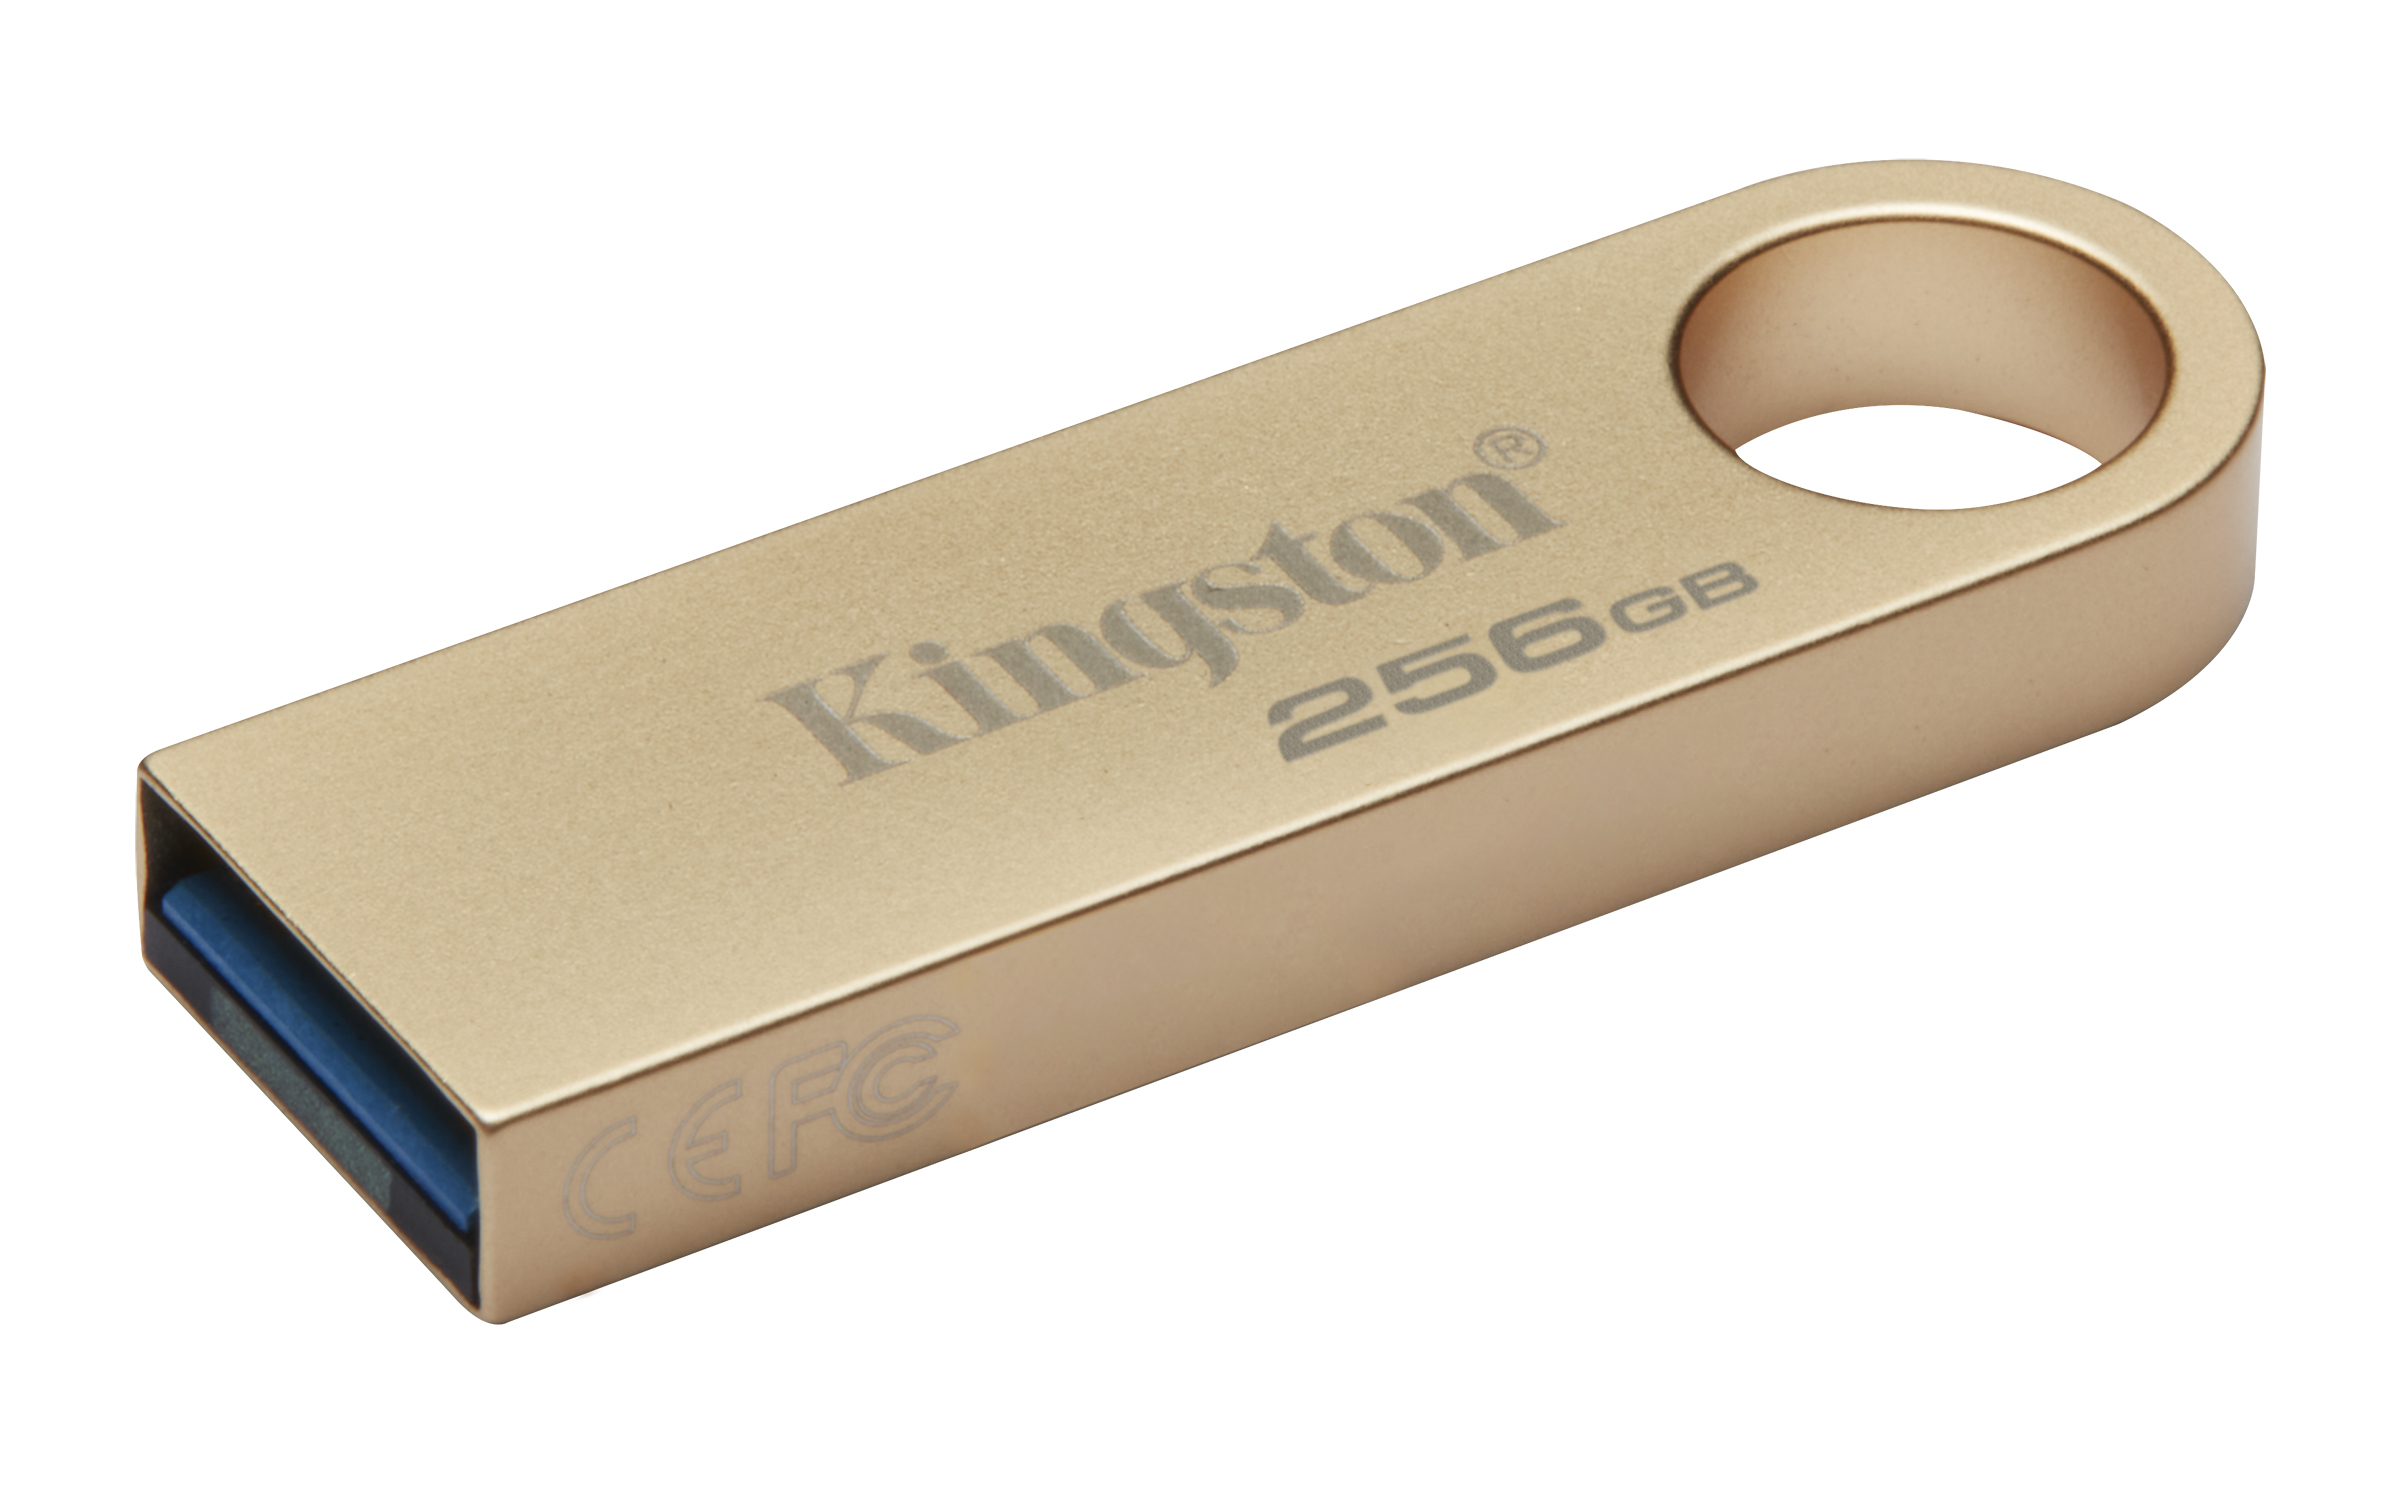 Kingston - Pen Kingston DataTraveler SE9 G3 256GB USB3.2 Gen 1